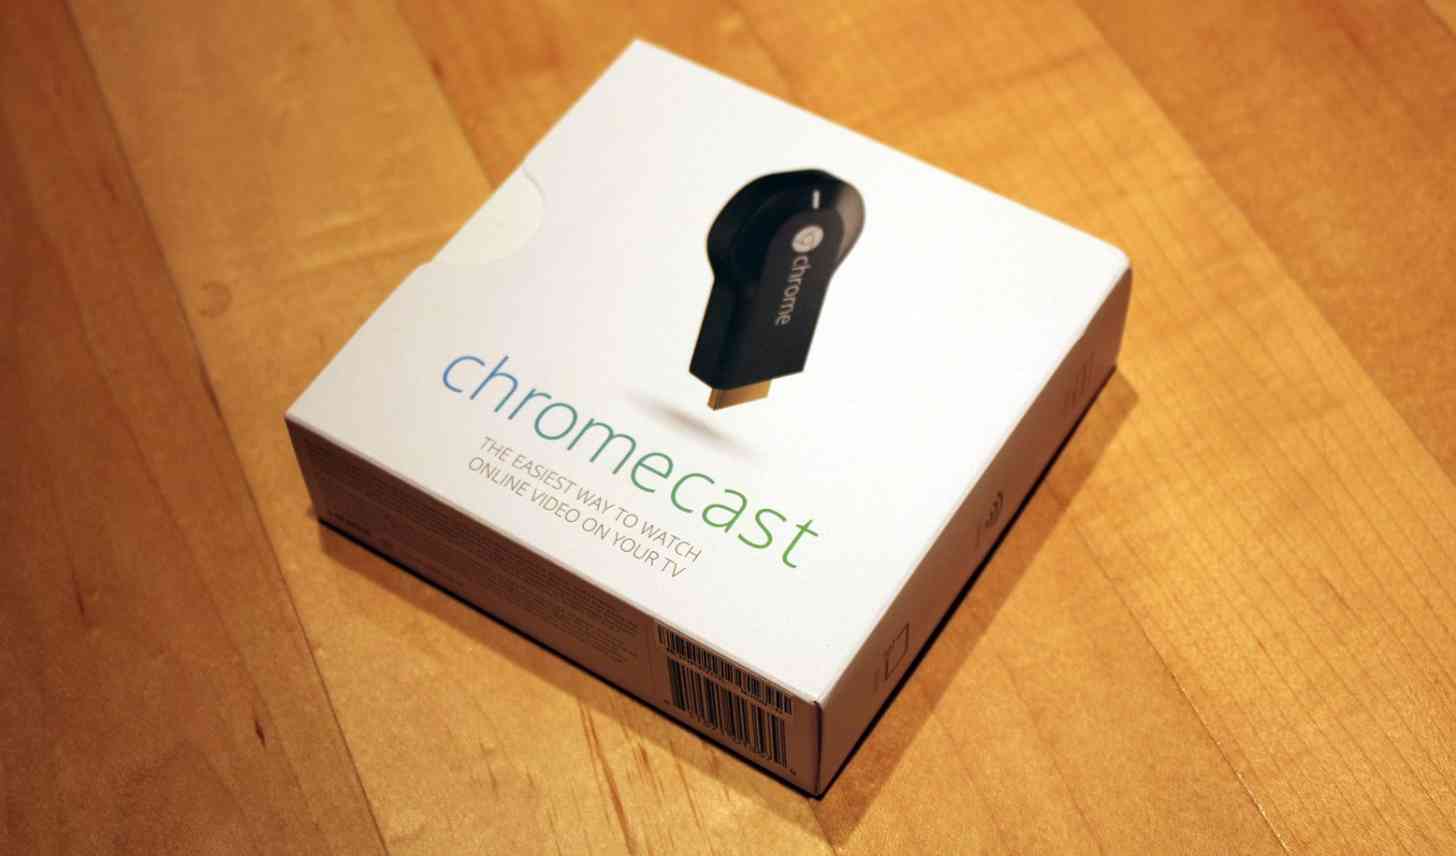 Google Chromecast packaging